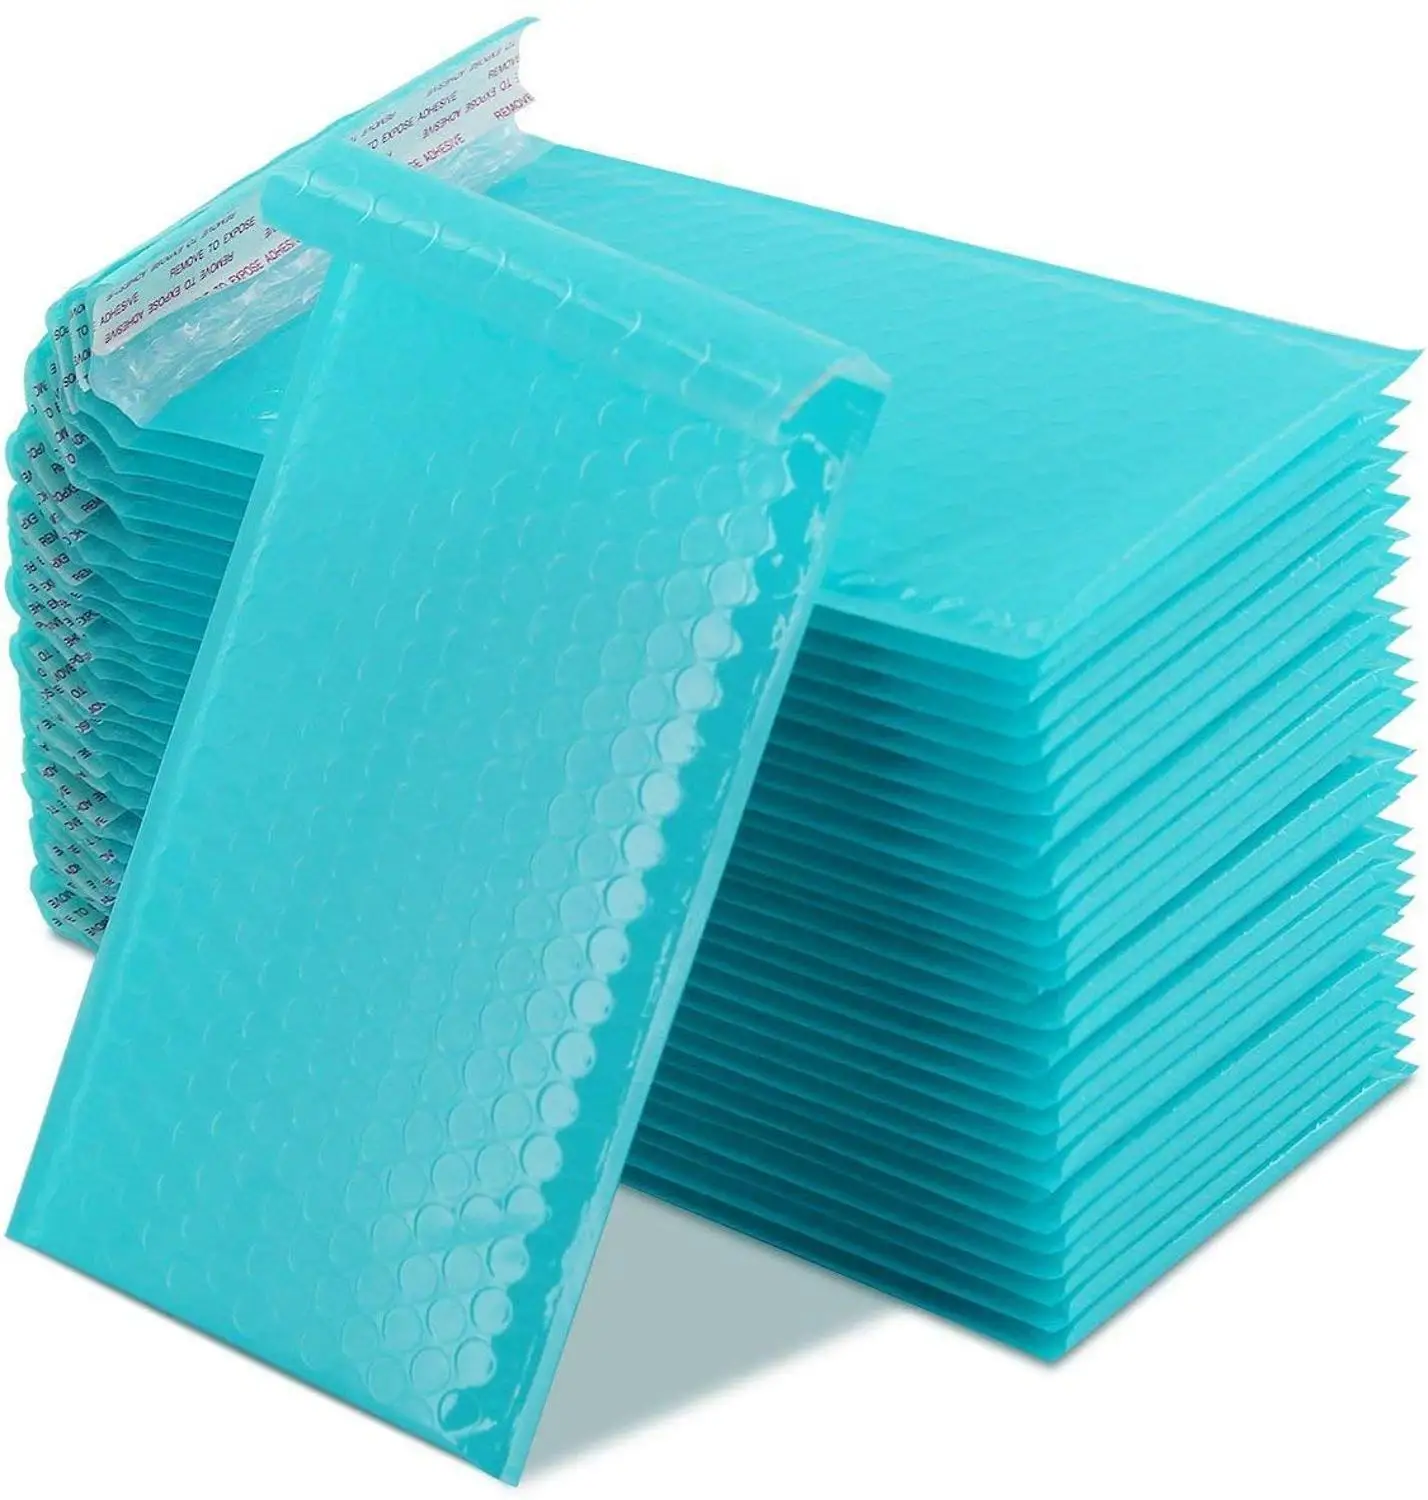 3 размера#000 4x8 дюймов бирюзовый полиэтиленовый конверт для почтовых отправлений с подкладкой, самозапечатывающаяся почтовая сумка, пузырьковый конверт,, конверт, почтовая сумка